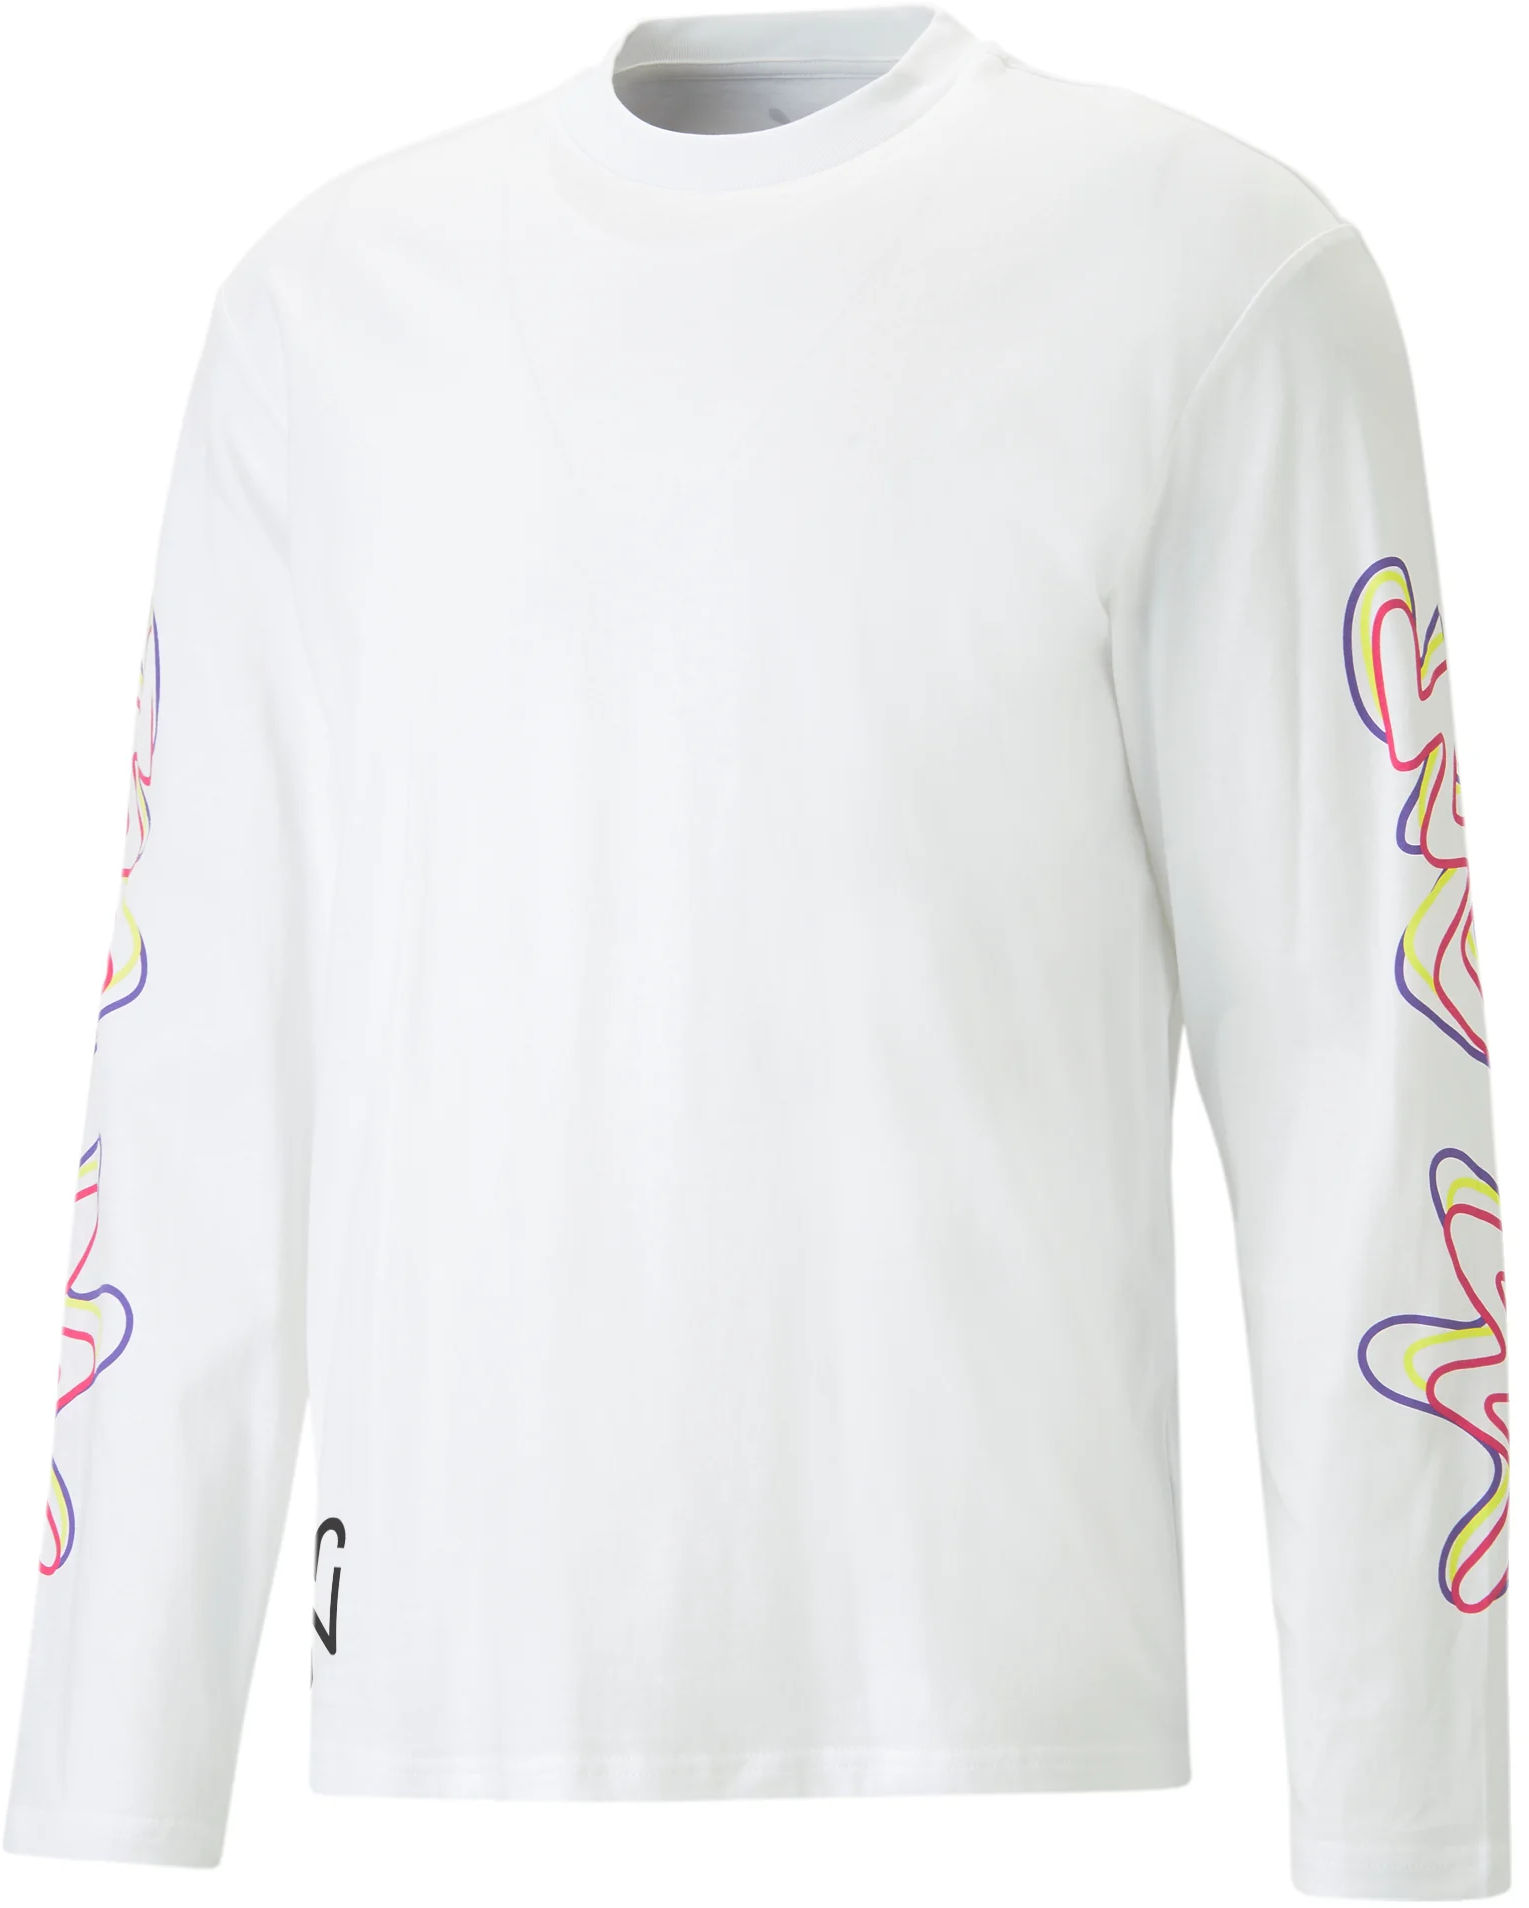 Μακρυμάνικη μπλούζα Puma Neymar JR Creativity Longsleeve Shirt